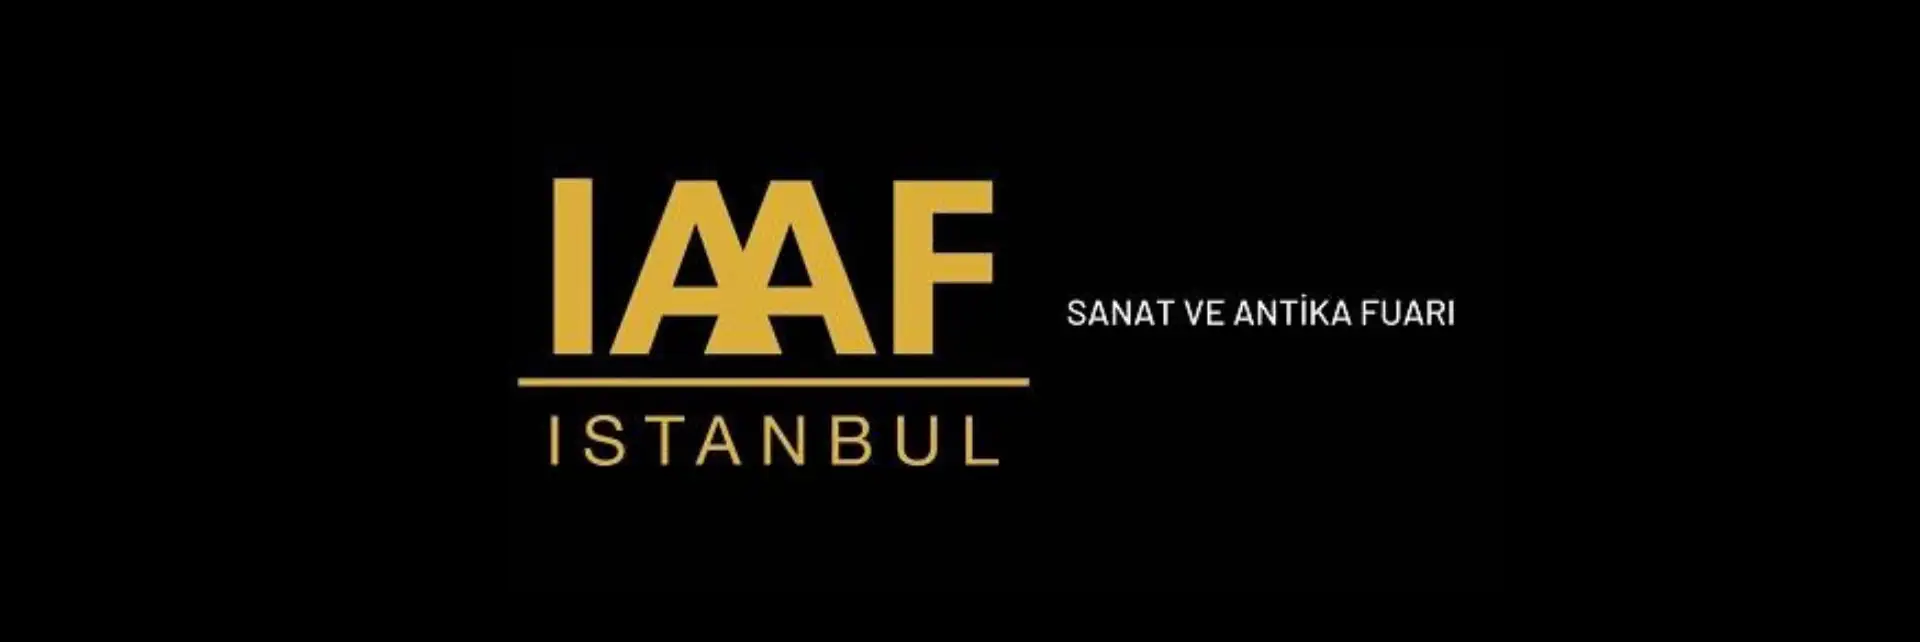 İstanbul Sanat ve Antika Fuarı (İAAF) 2023